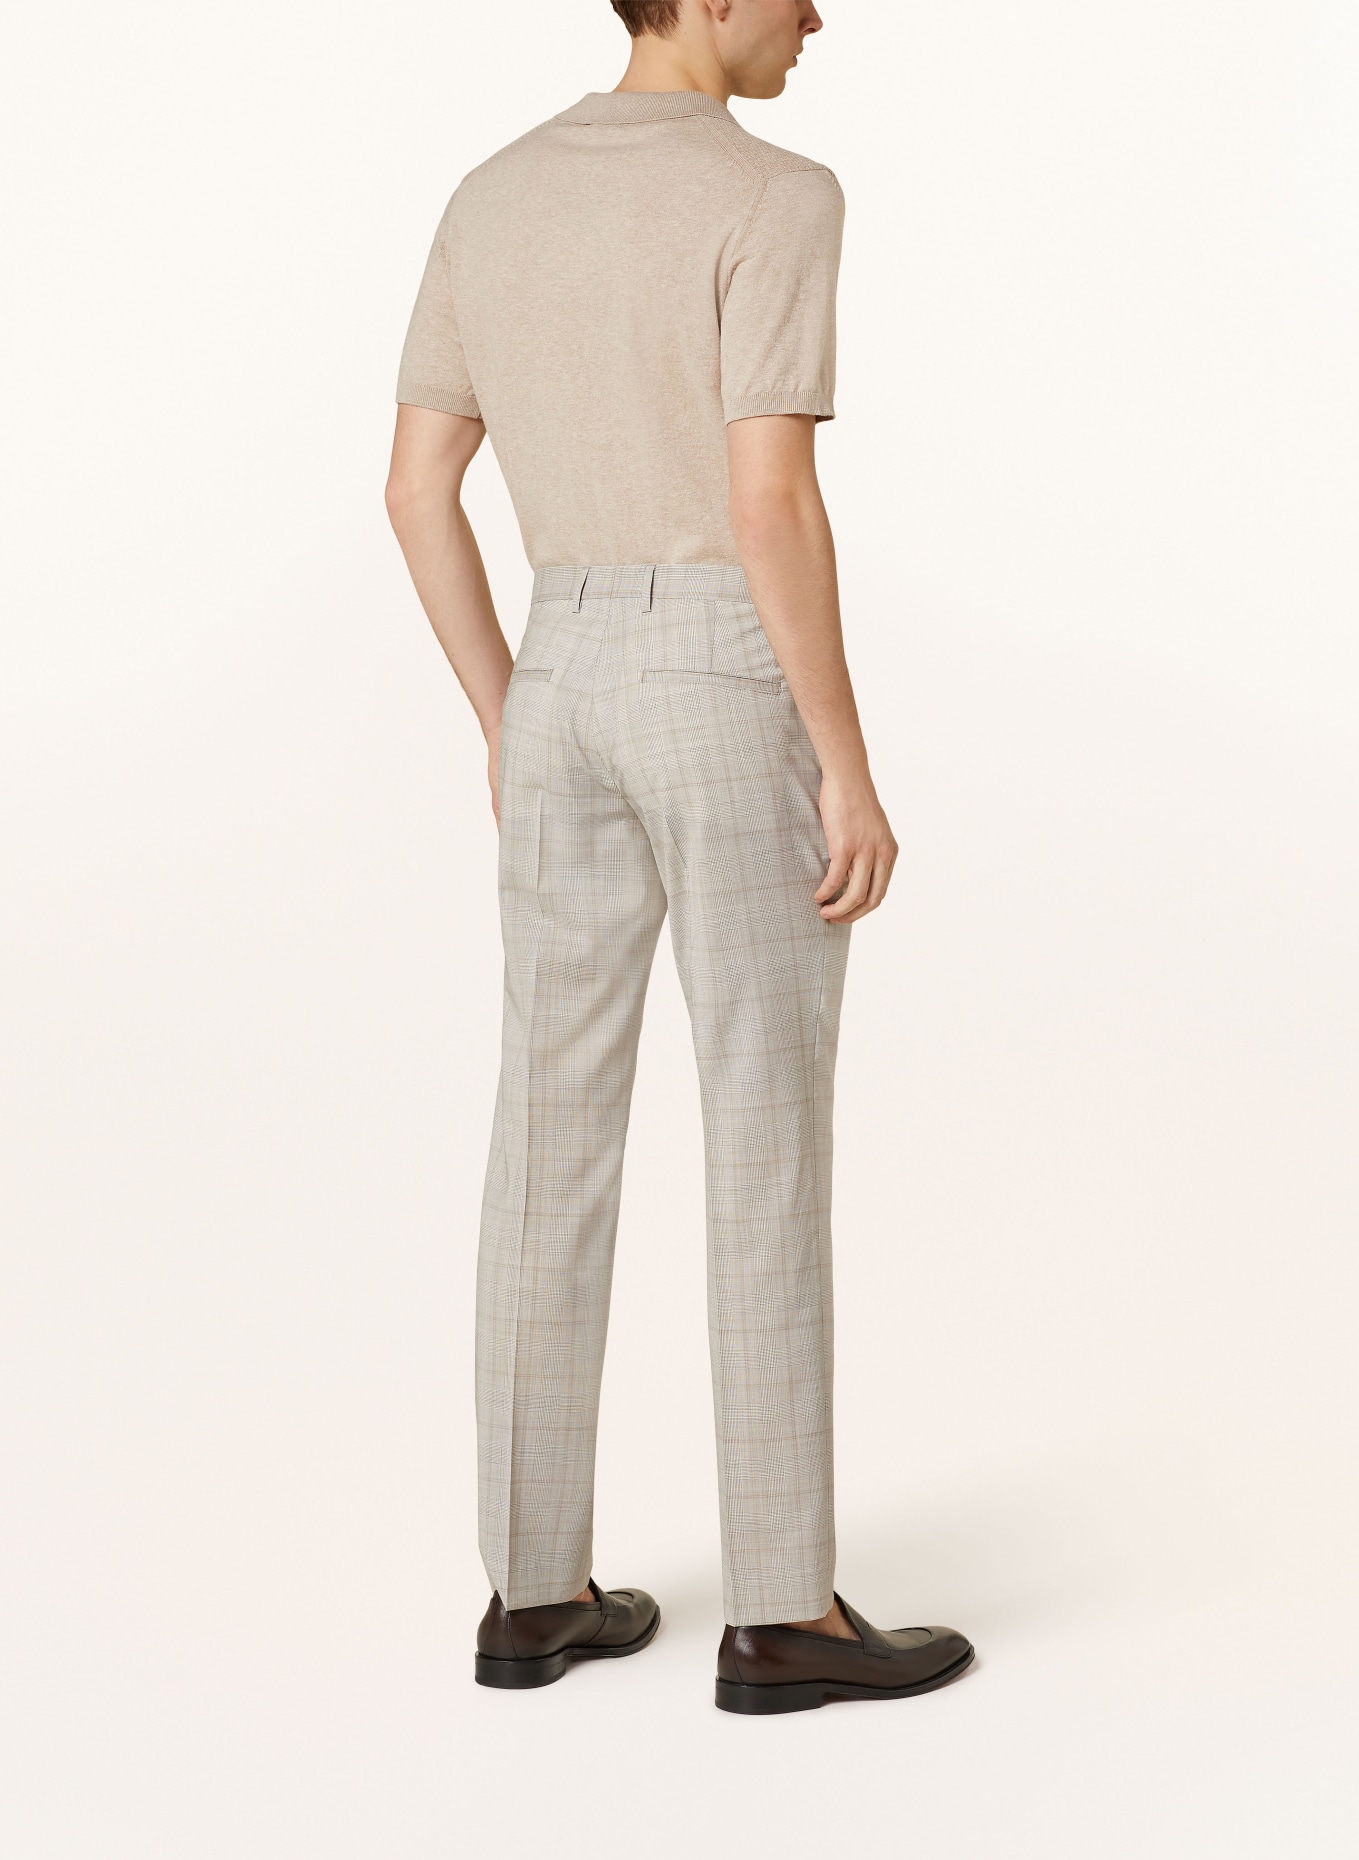 SAND COPENHAGEN Suit trousers CRAIG classic fit, Color: 220 hellbeige (Image 4)